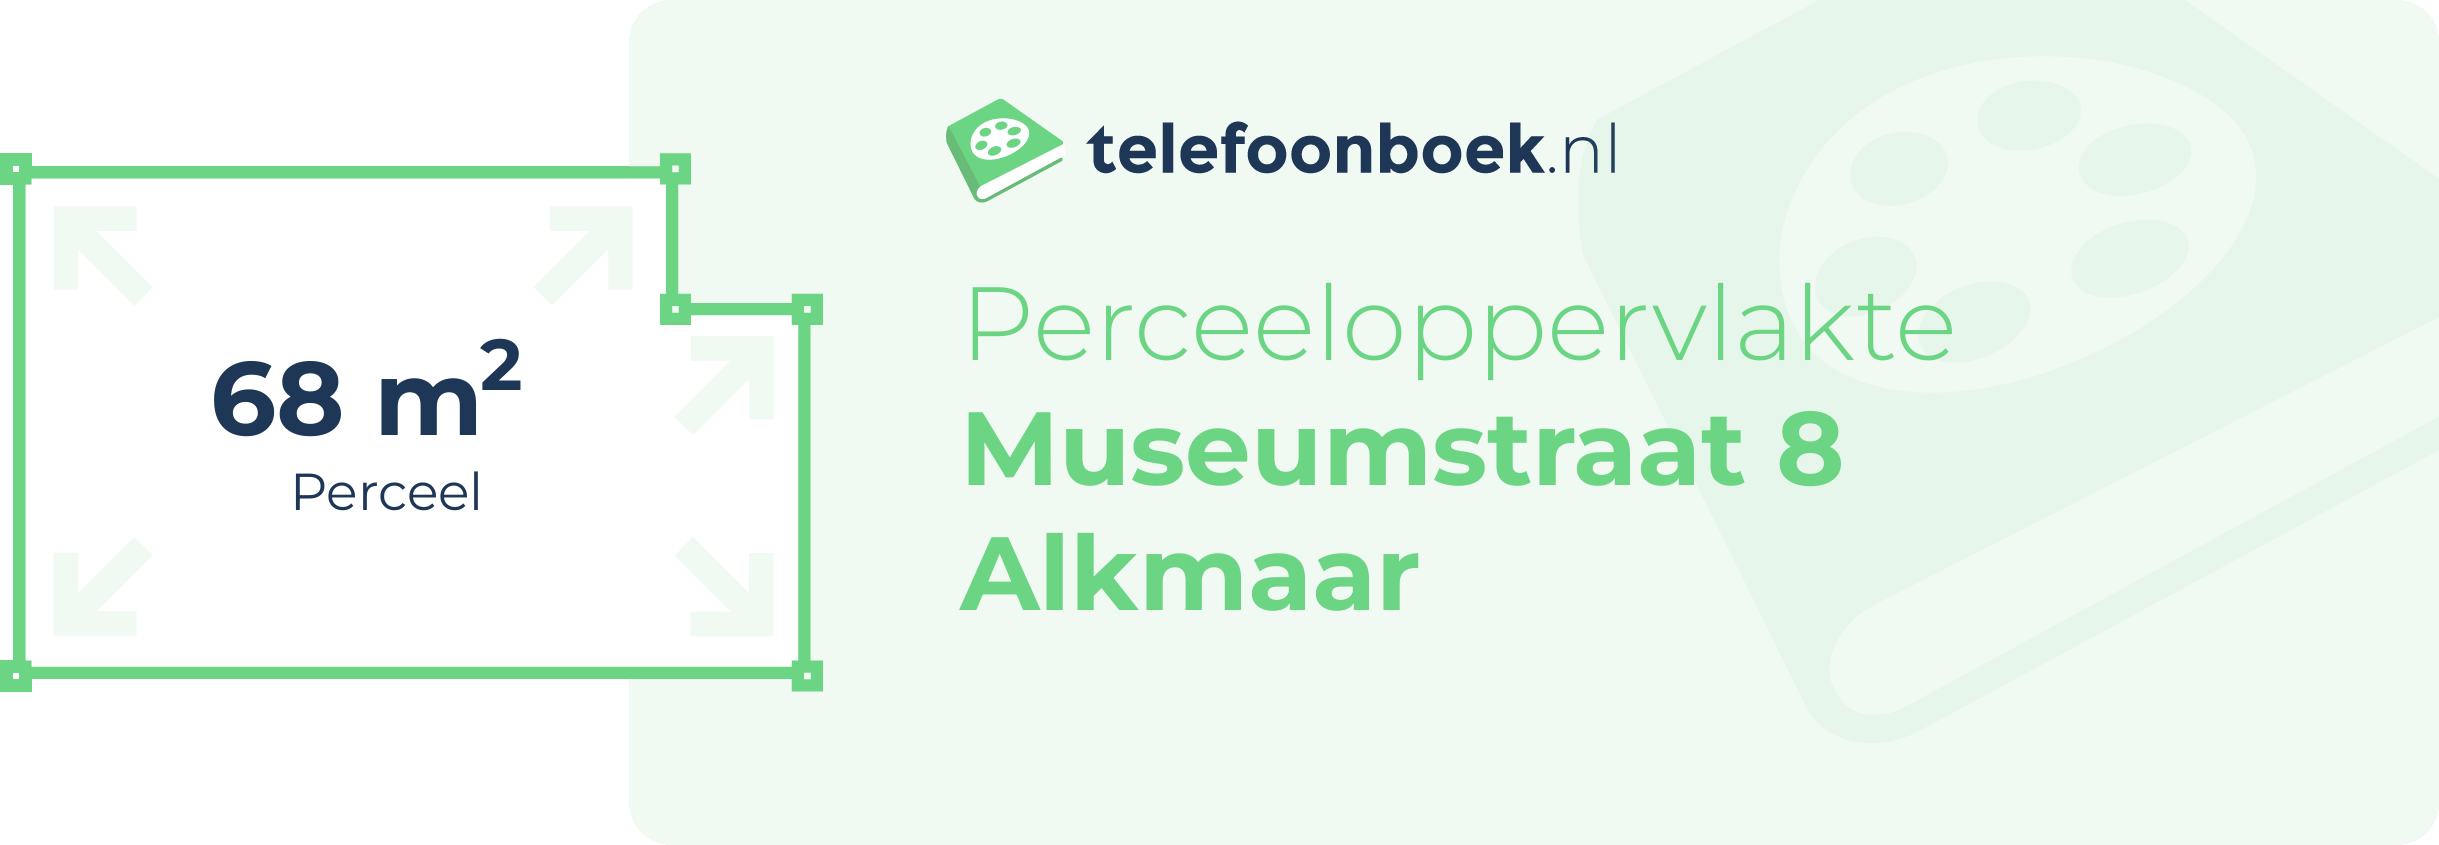 Perceeloppervlakte Museumstraat 8 Alkmaar